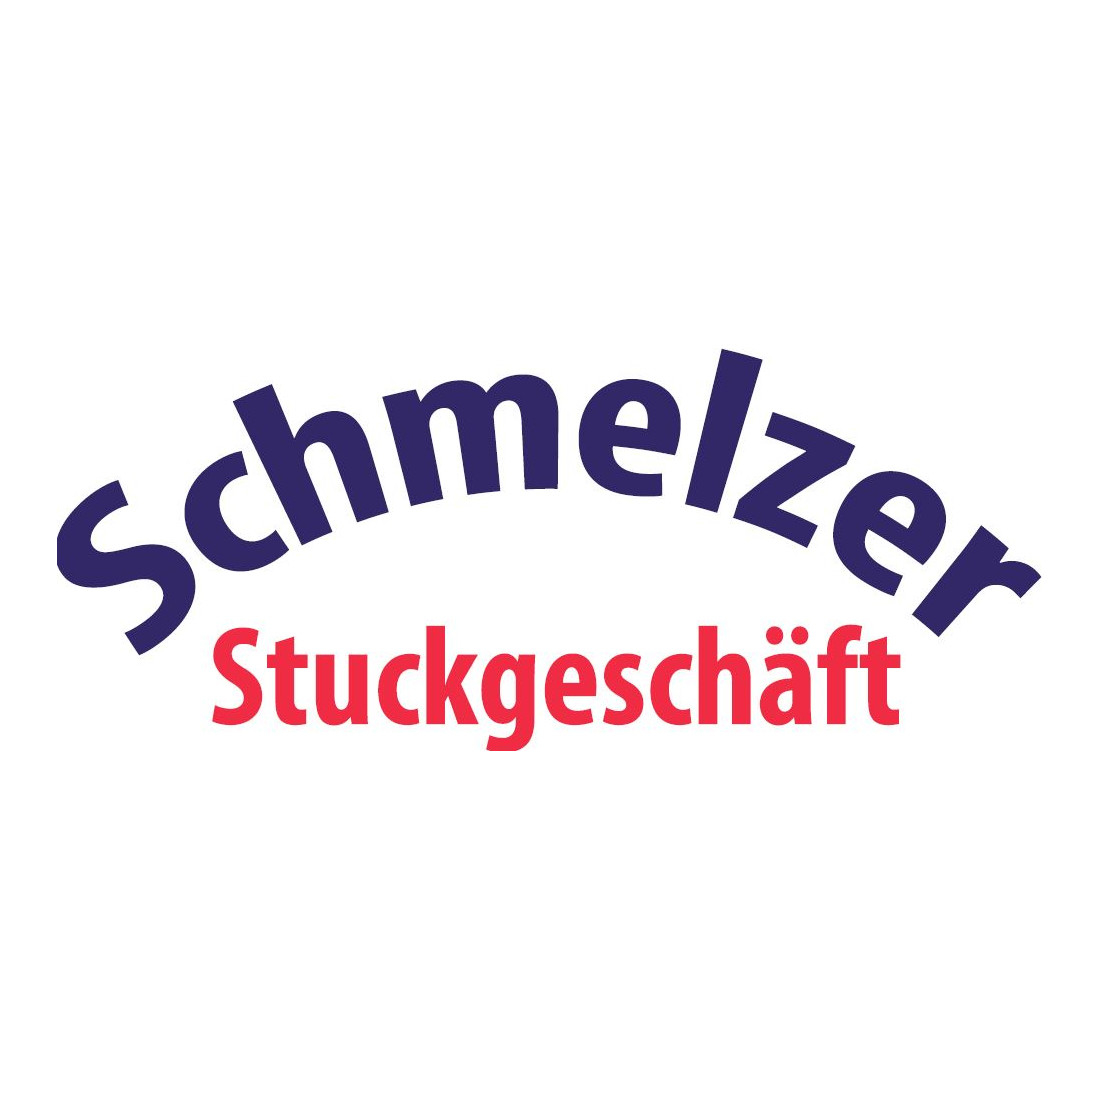 Schmelzer Stuckgeschäft in Nürnberg - Logo